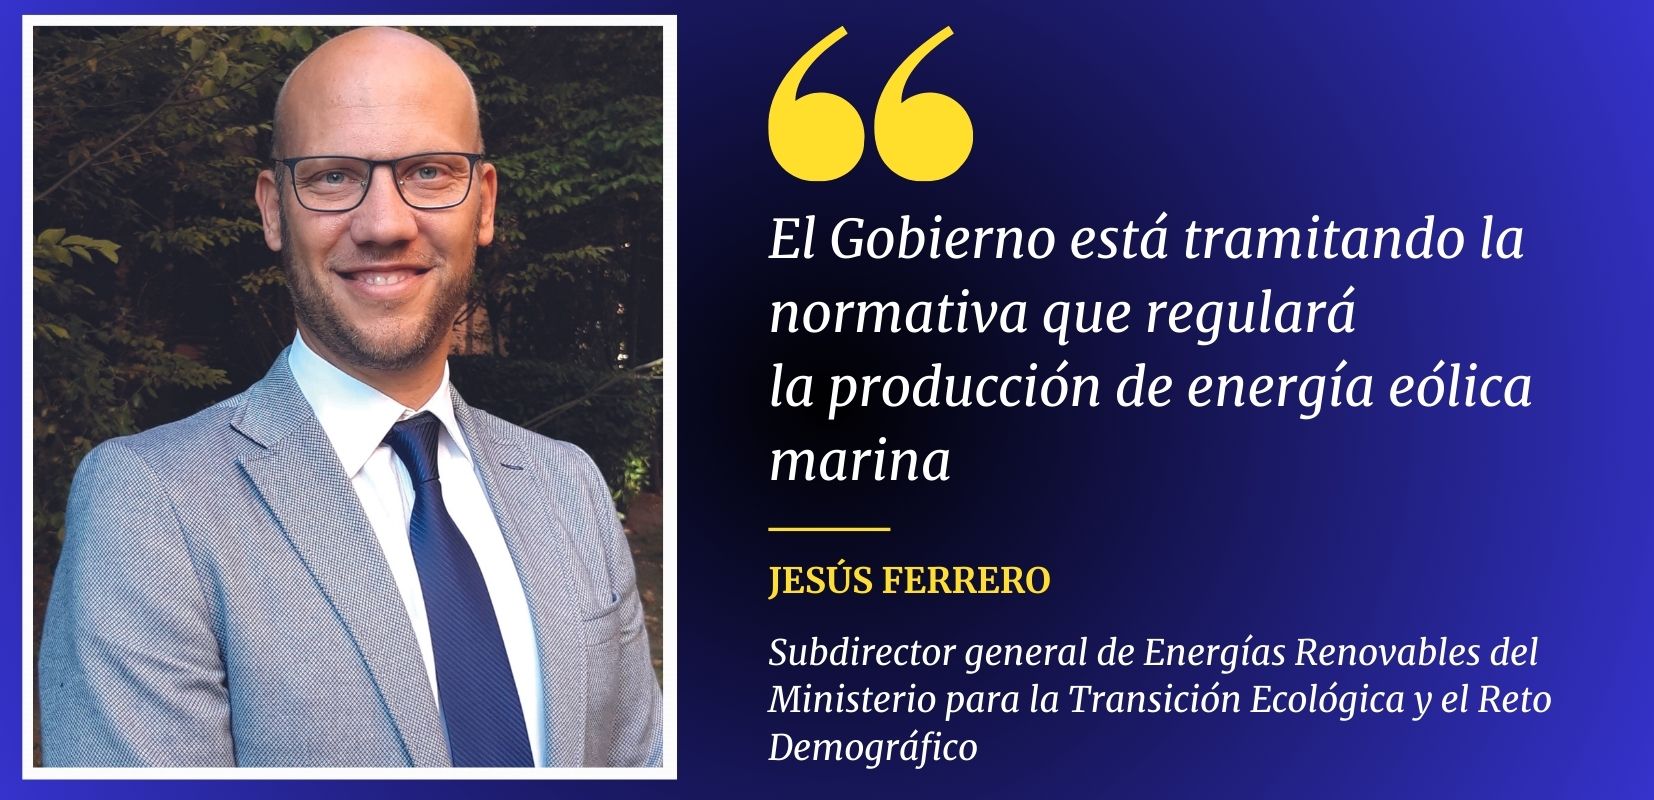 Jesús Ferrero,  Subdirector general de Energías Renovables del Ministerio para la Transición Ecológica y el Reto Demográfico